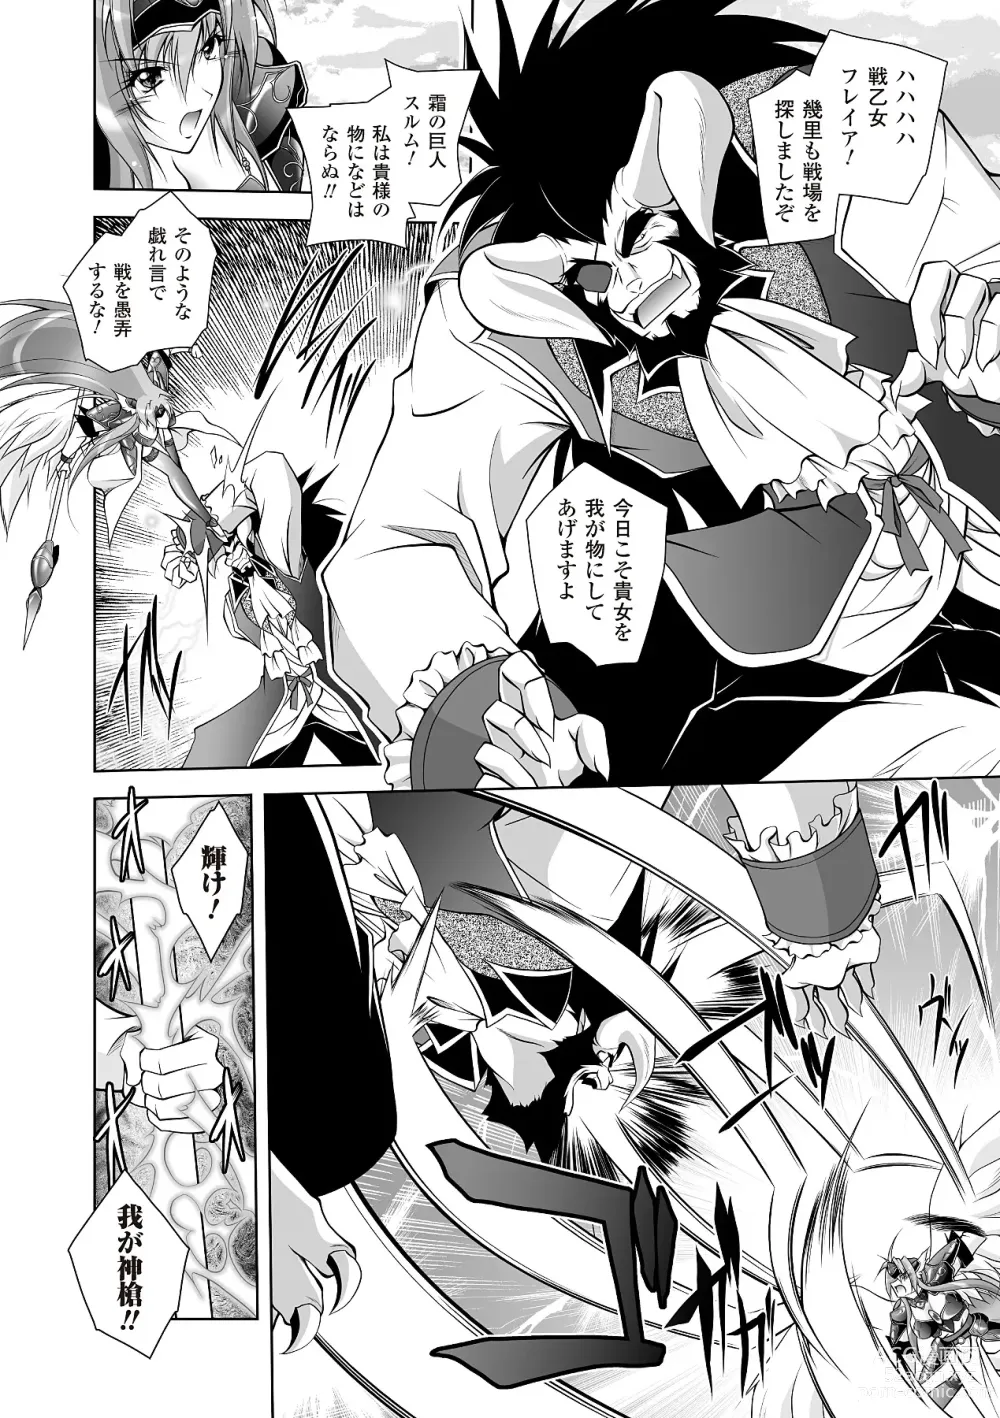 Page 6 of manga Datenshi-tachi no Rhapsody - Fallen Angels Rhapsody